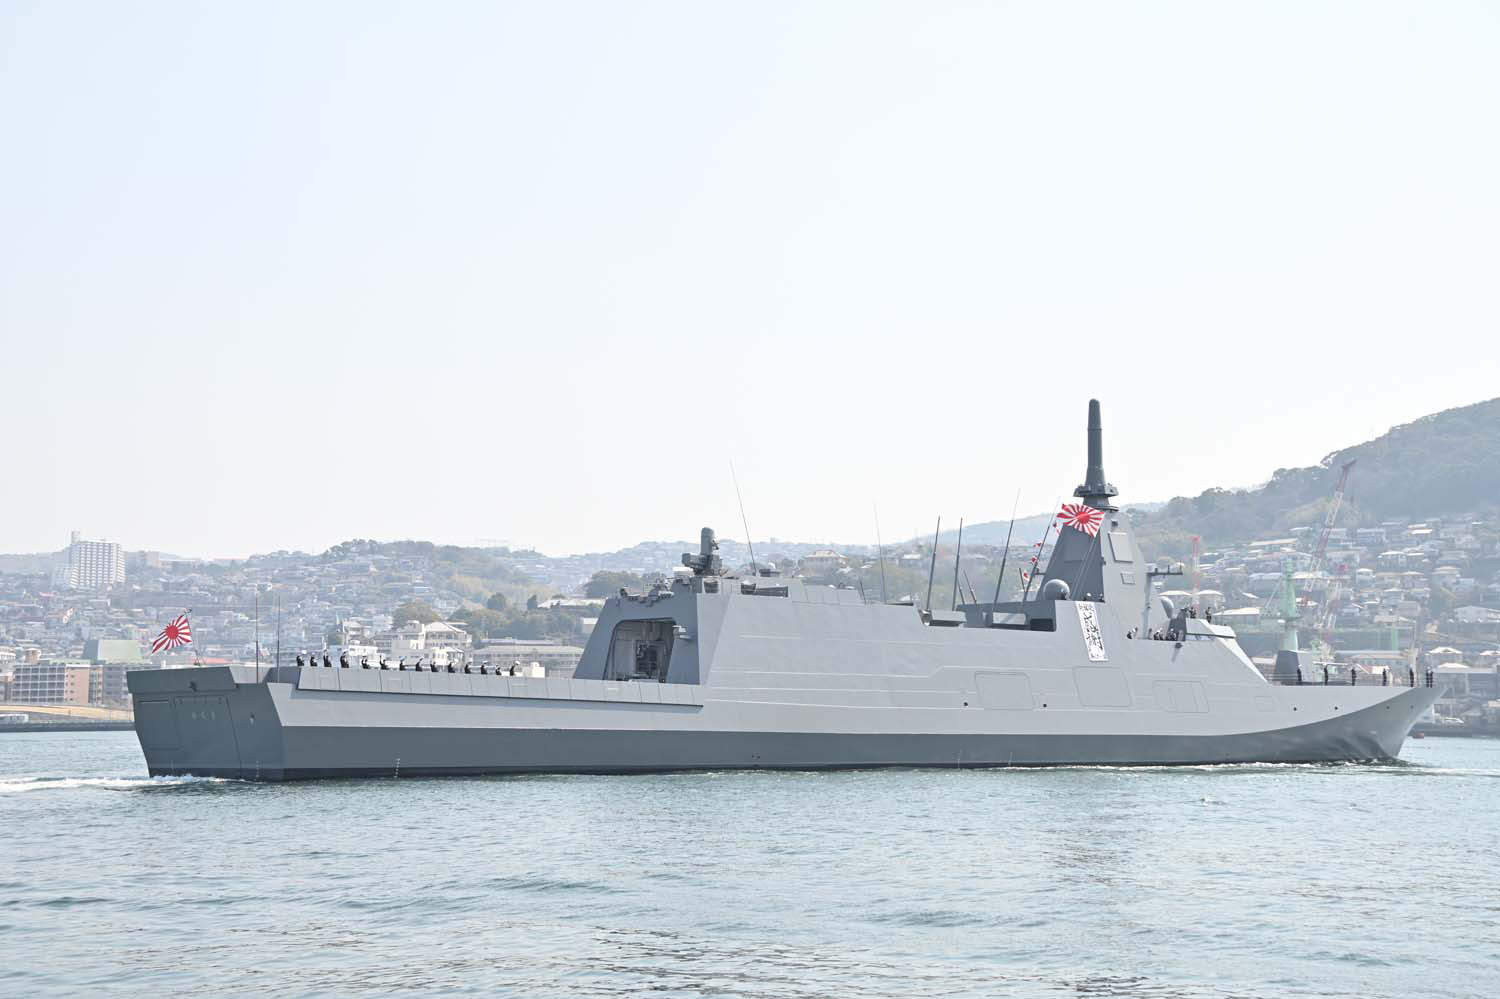 澳洲對外採購新艦 日本嗅商機想競標  恐加劇軍備競賽